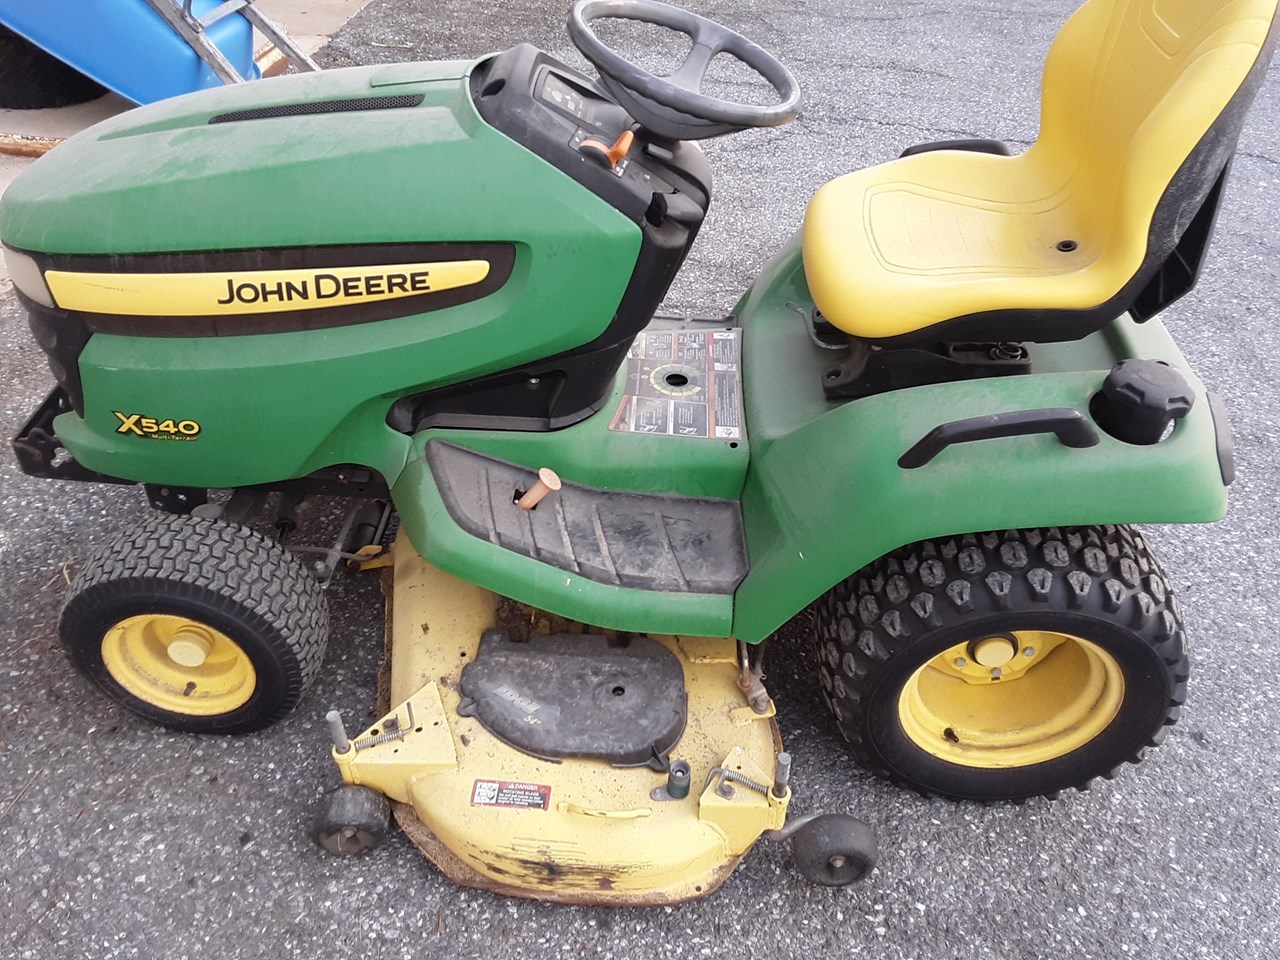 2012 John Deere X540 Lawn Mower For Sale